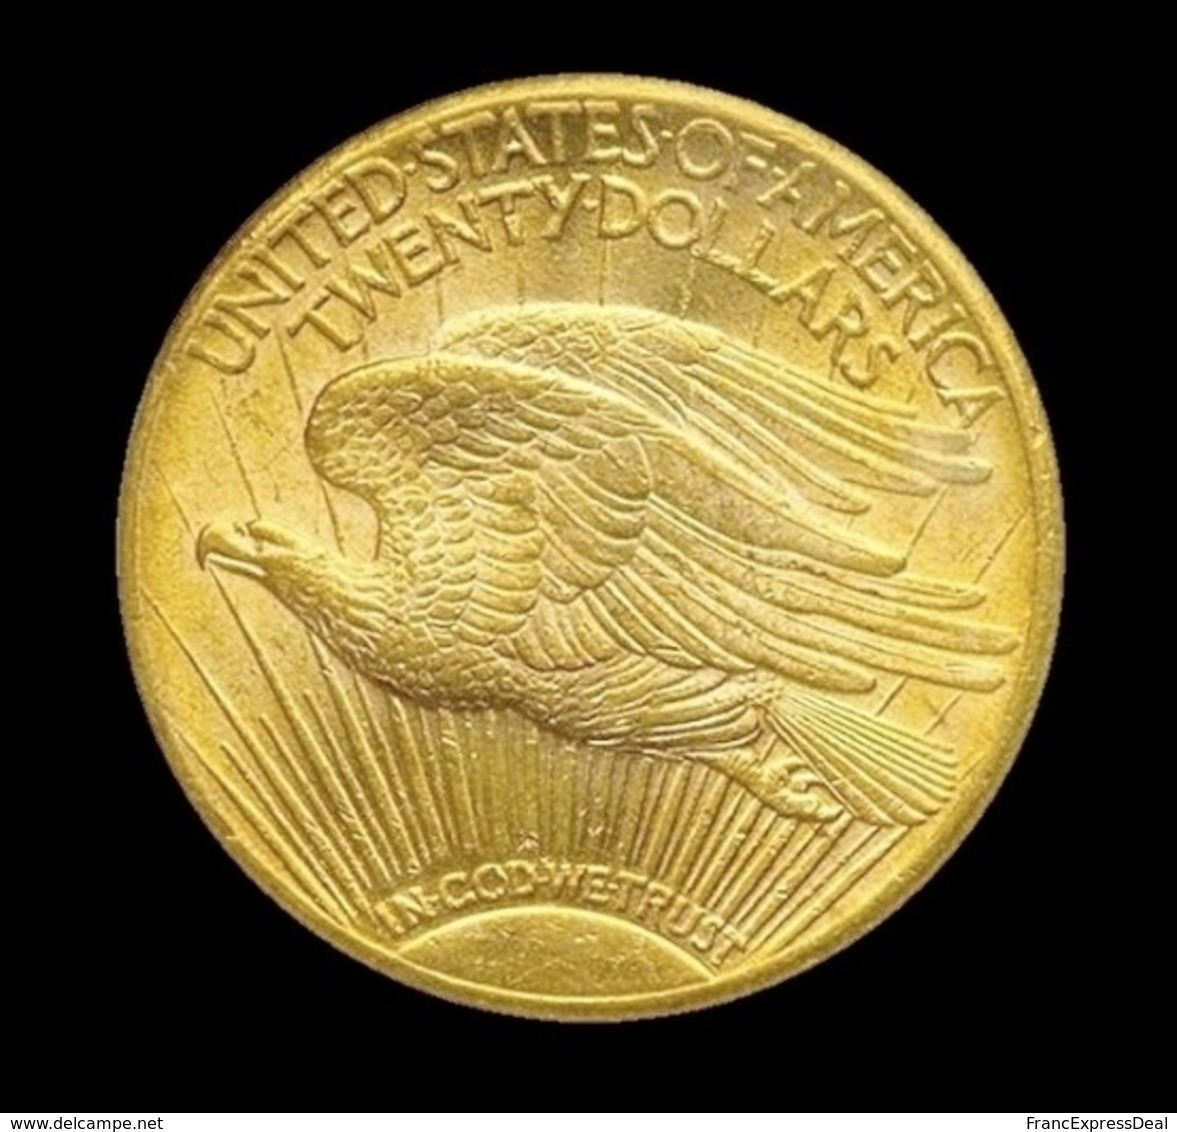 COPIE - 1 Pièce Plaquée OR Sous Capsule ! ( GOLD Plated Coin ) - 20 Dollars Saint Gaudens 1908 S - 20$ - Double Eagles - 1907-1933: Saint-Gaudens